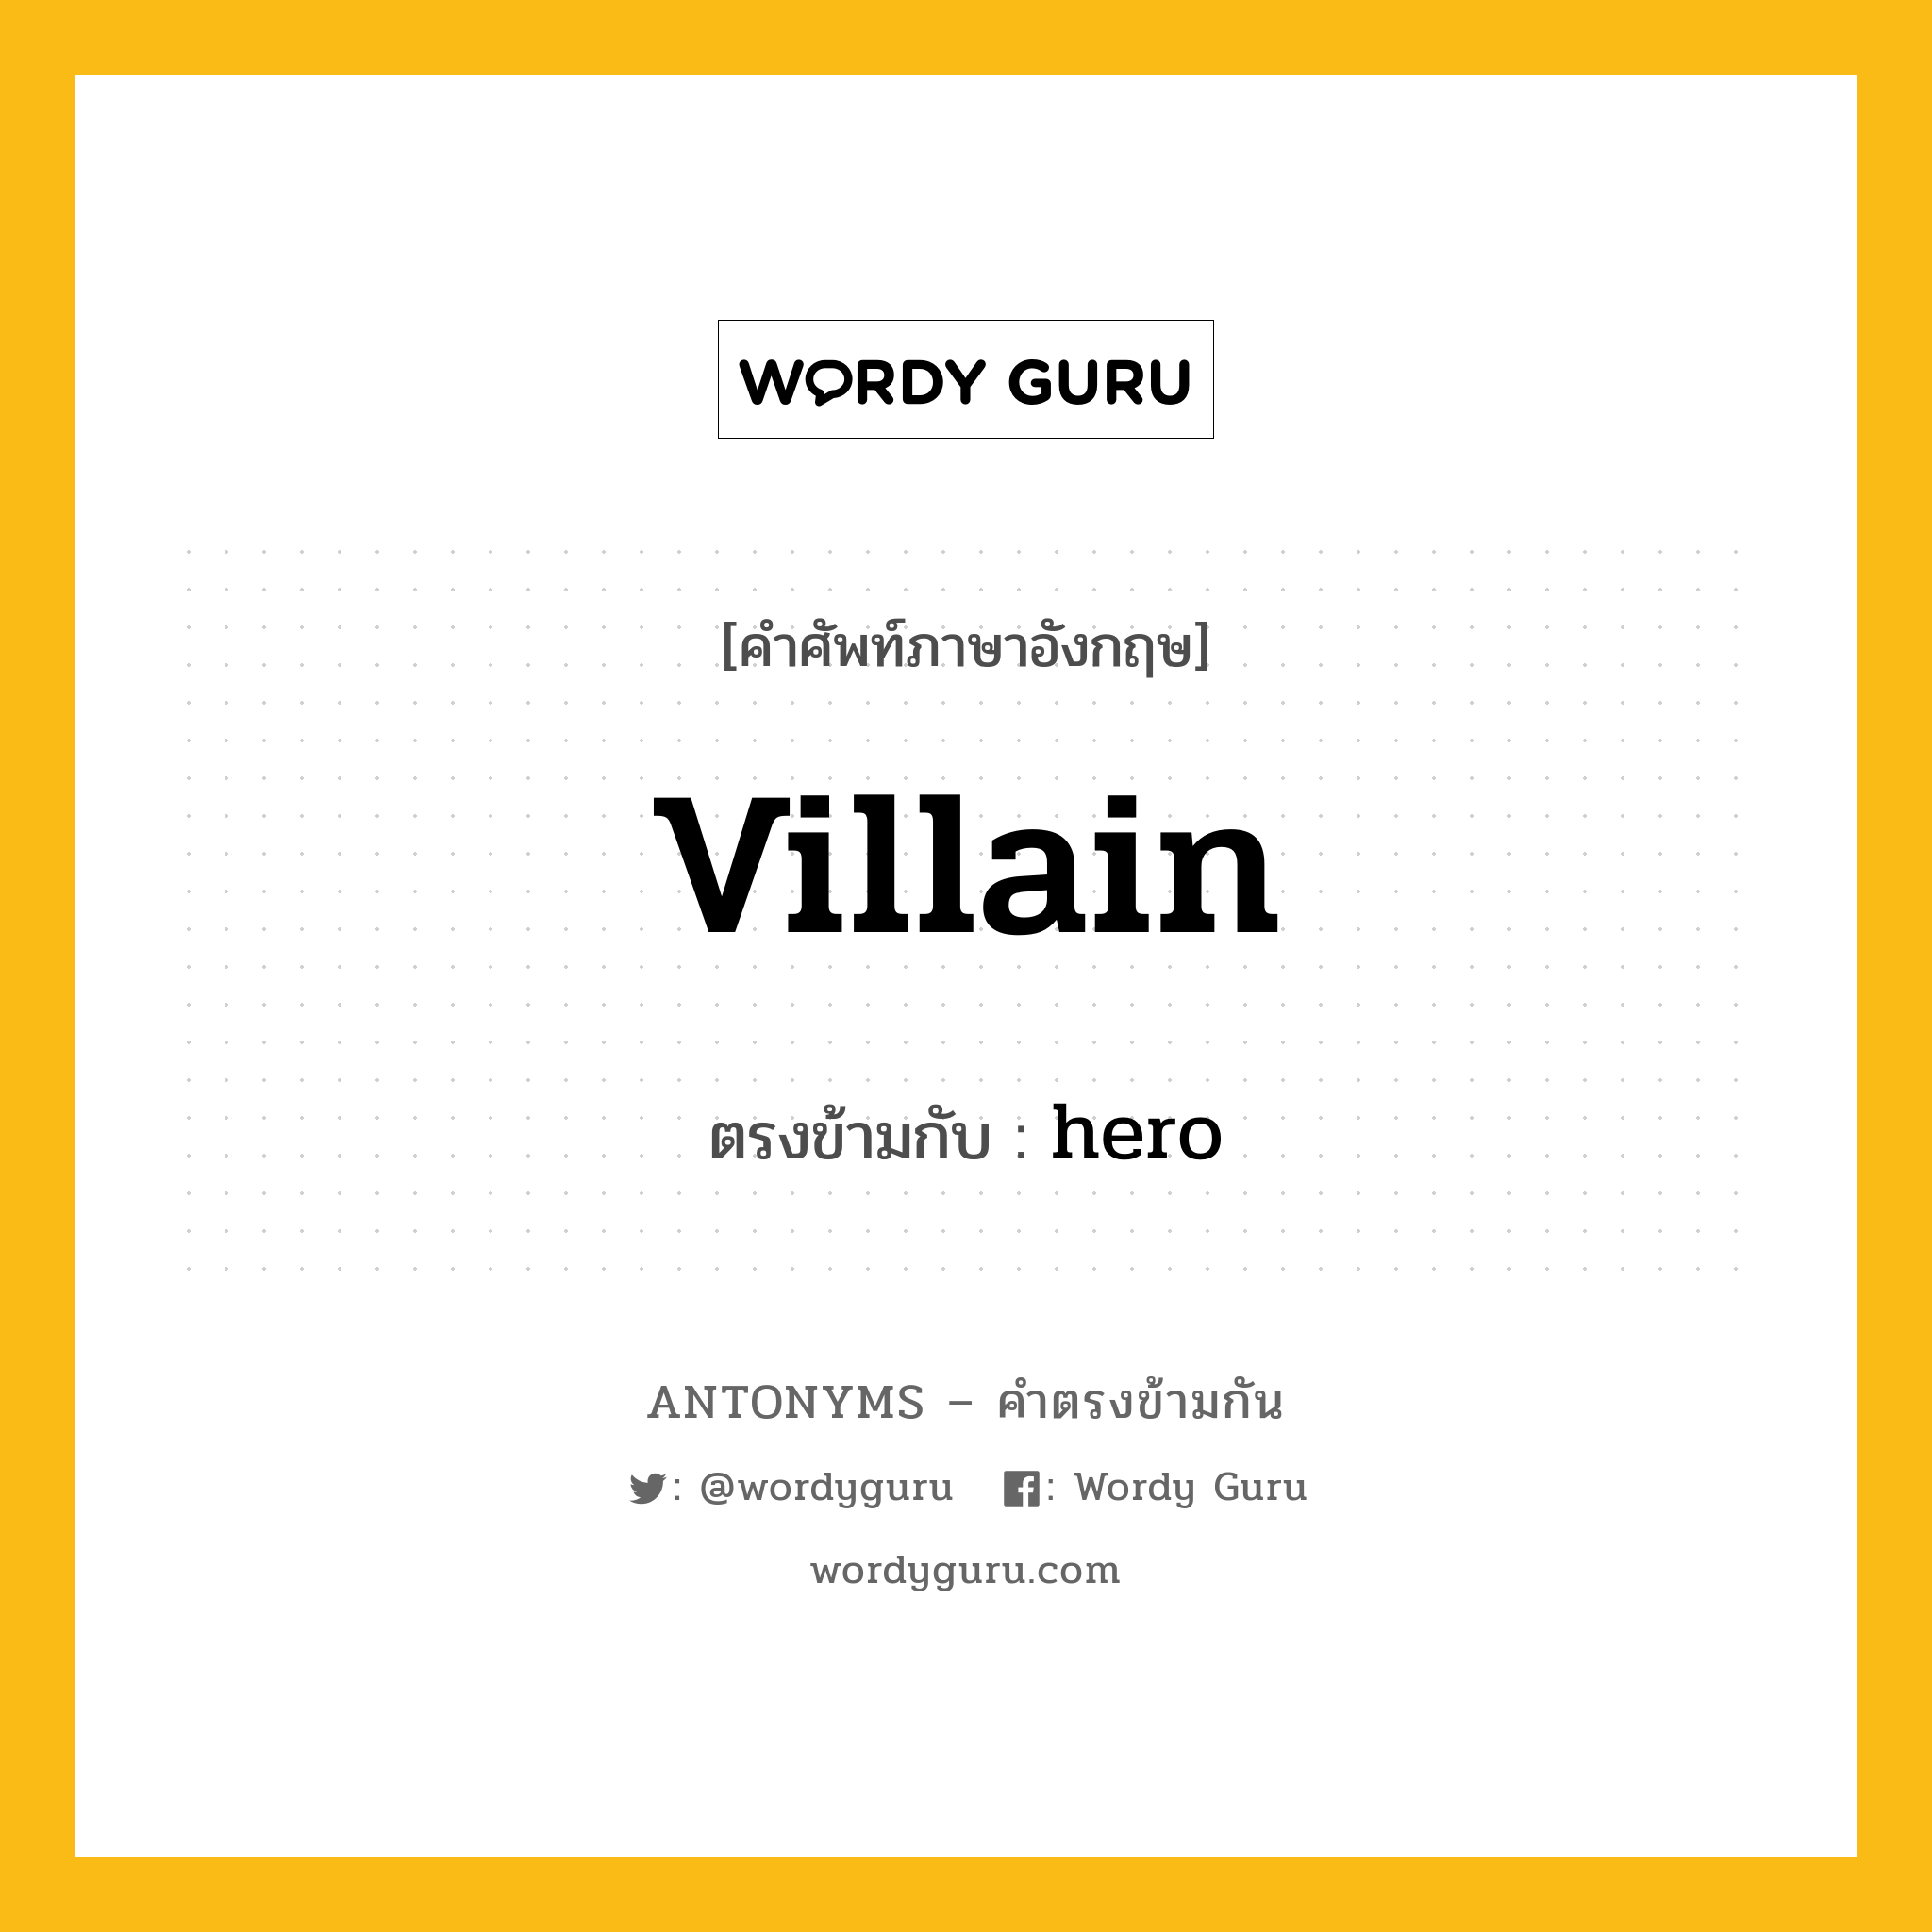 villain เป็นคำตรงข้ามกับคำไหนบ้าง?, คำศัพท์ภาษาอังกฤษ villain ตรงข้ามกับ hero หมวด hero